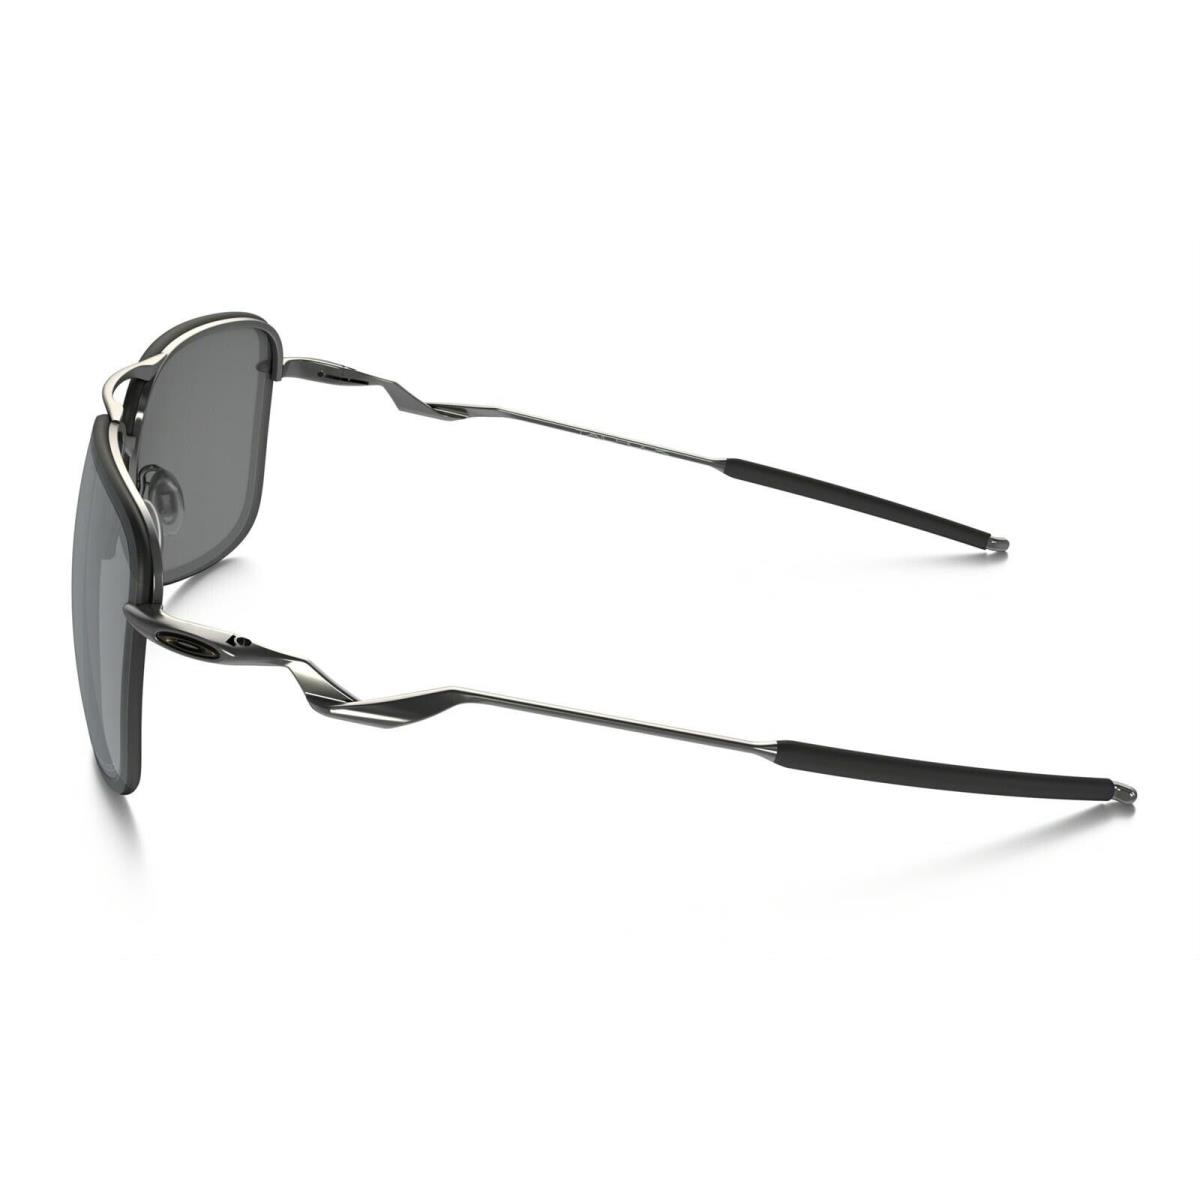 Oakley - Tailhook - Sunglasses Lead / Black Iridium Polarized OO4087-06